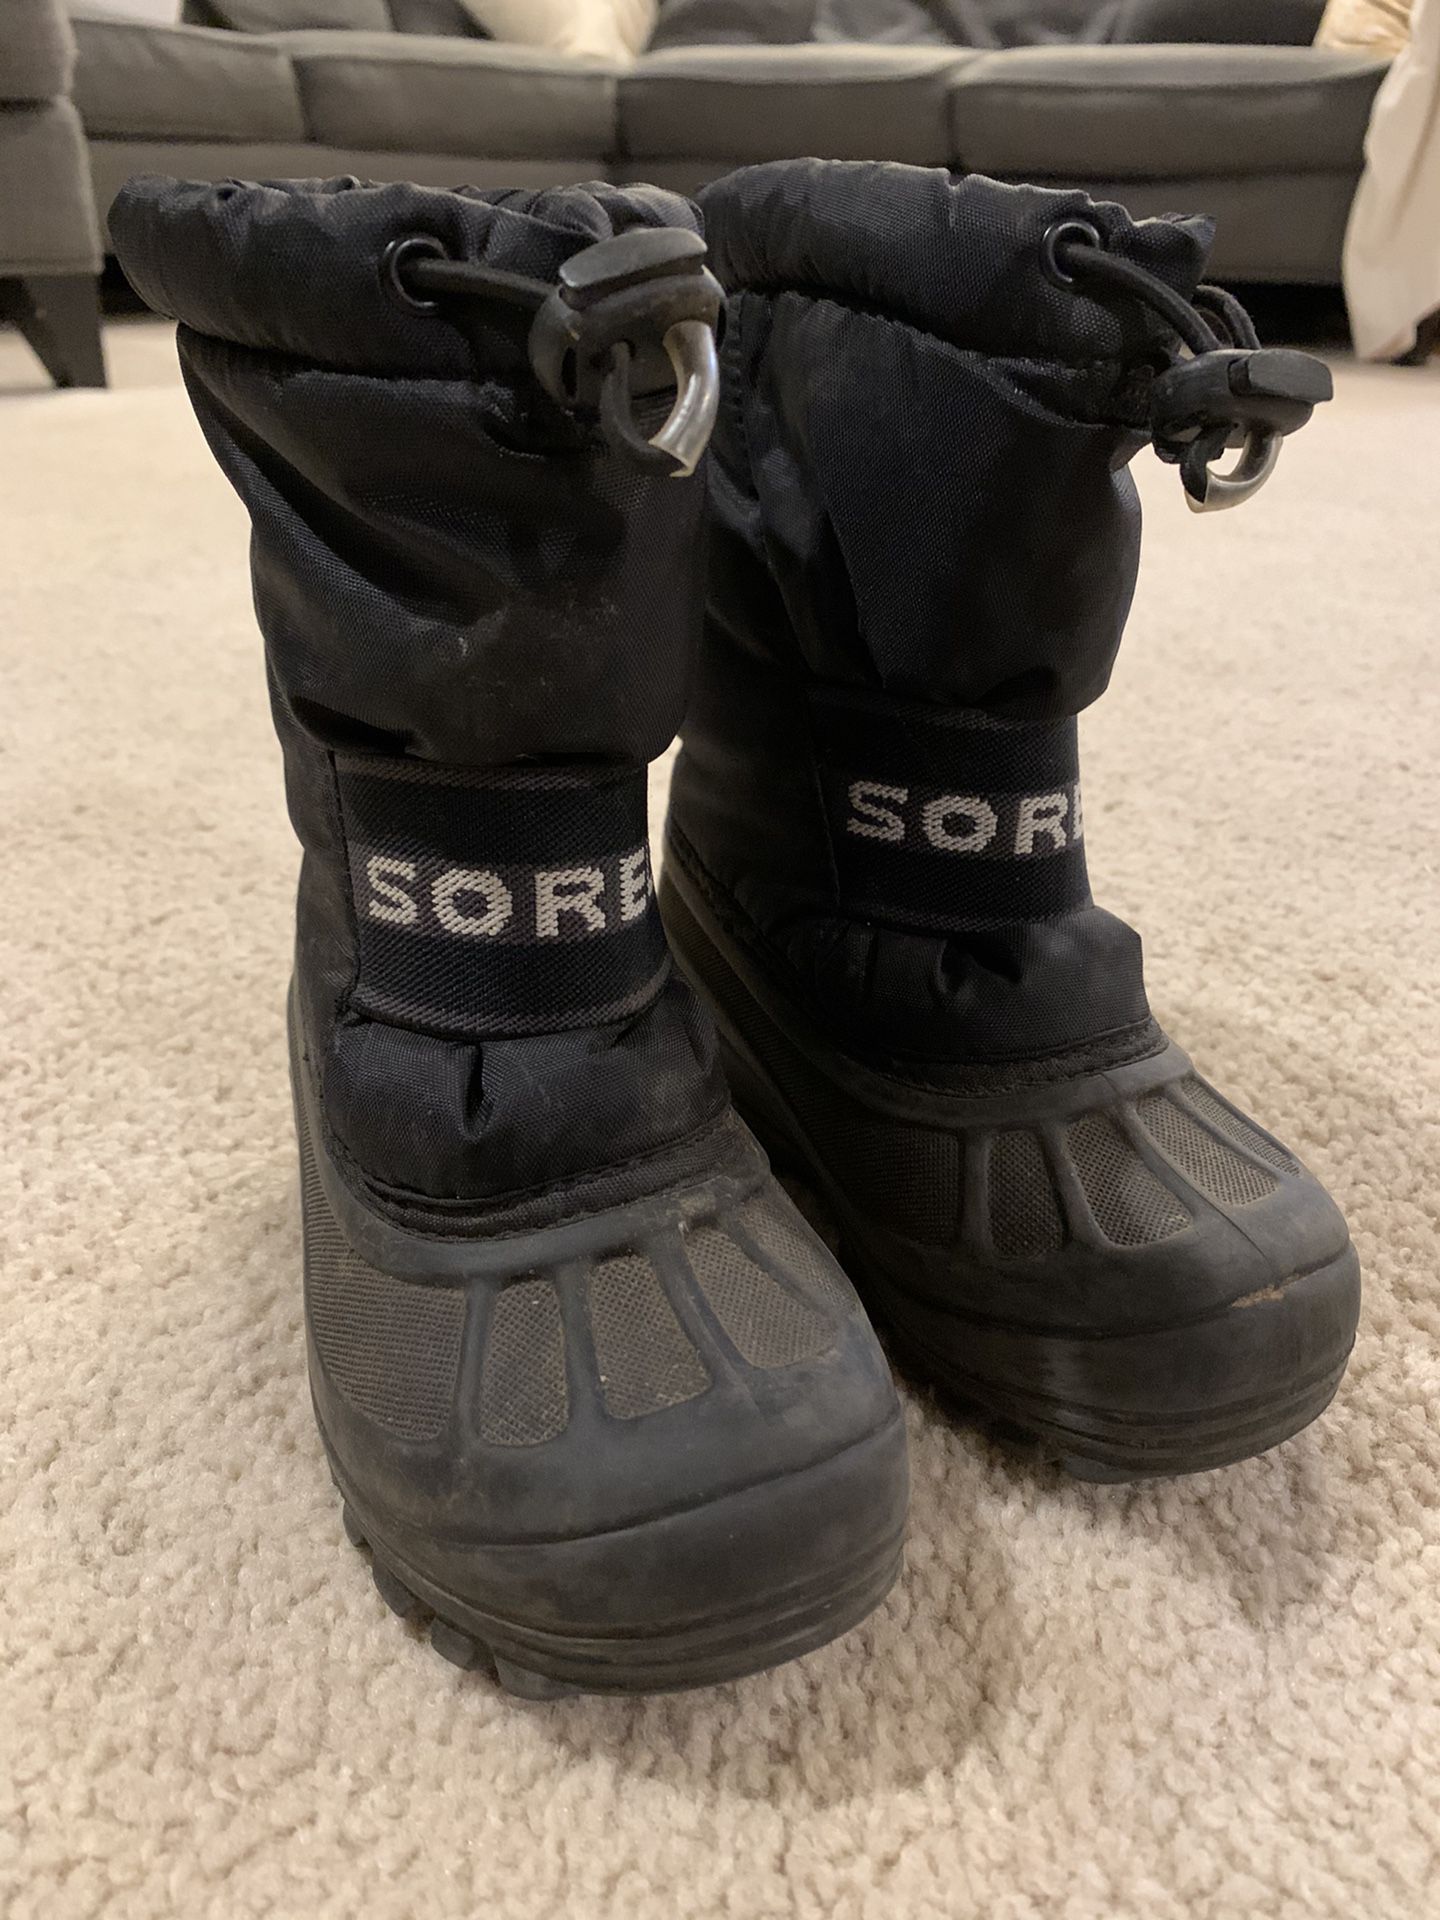 Toddler Sorel Snow boots